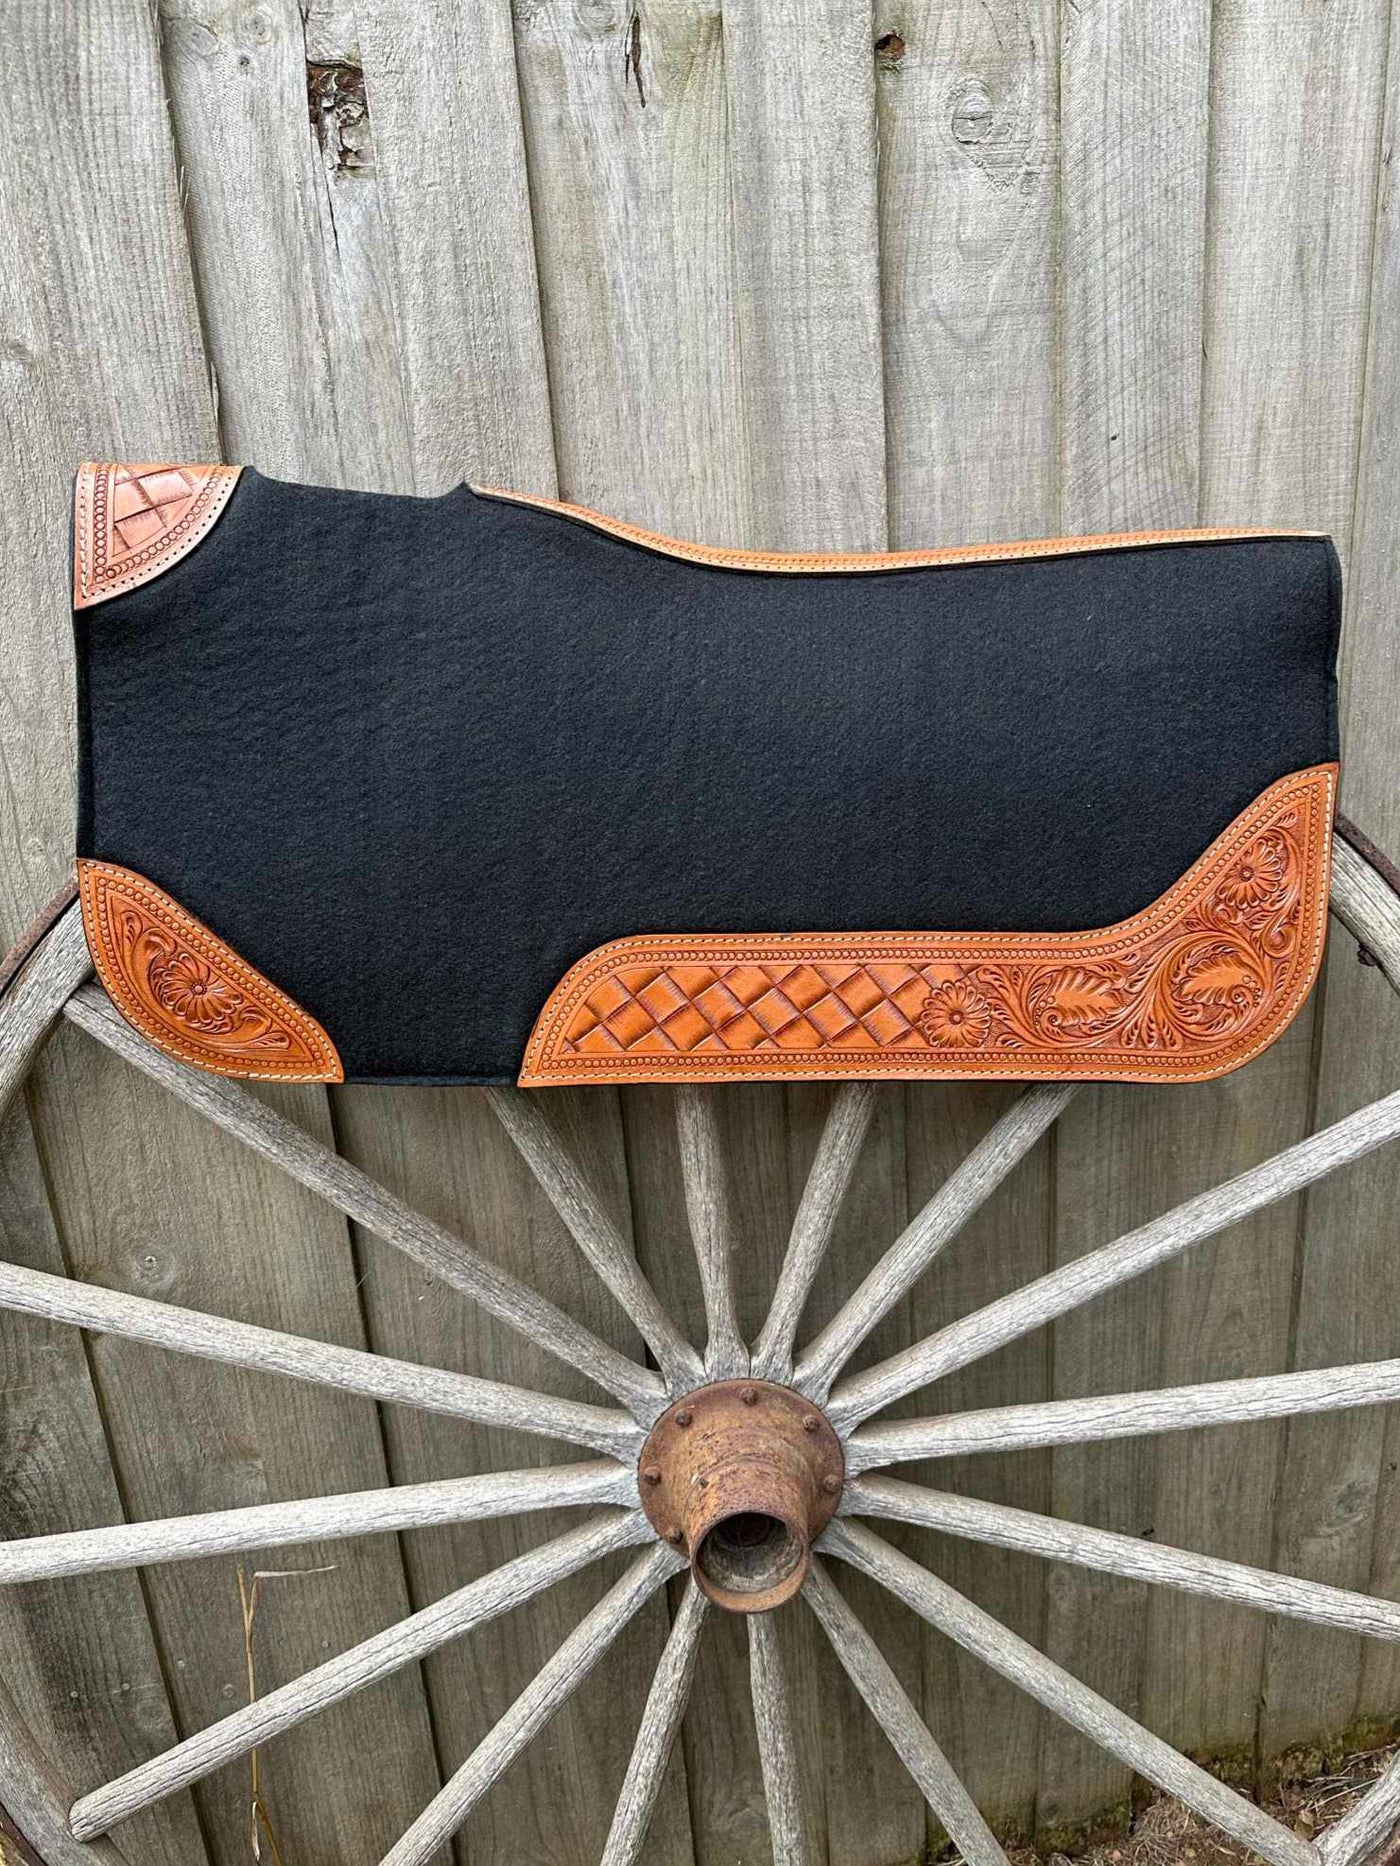 Western Saddle Pad Felt Contoured 31" X 32"  Tooled Leather